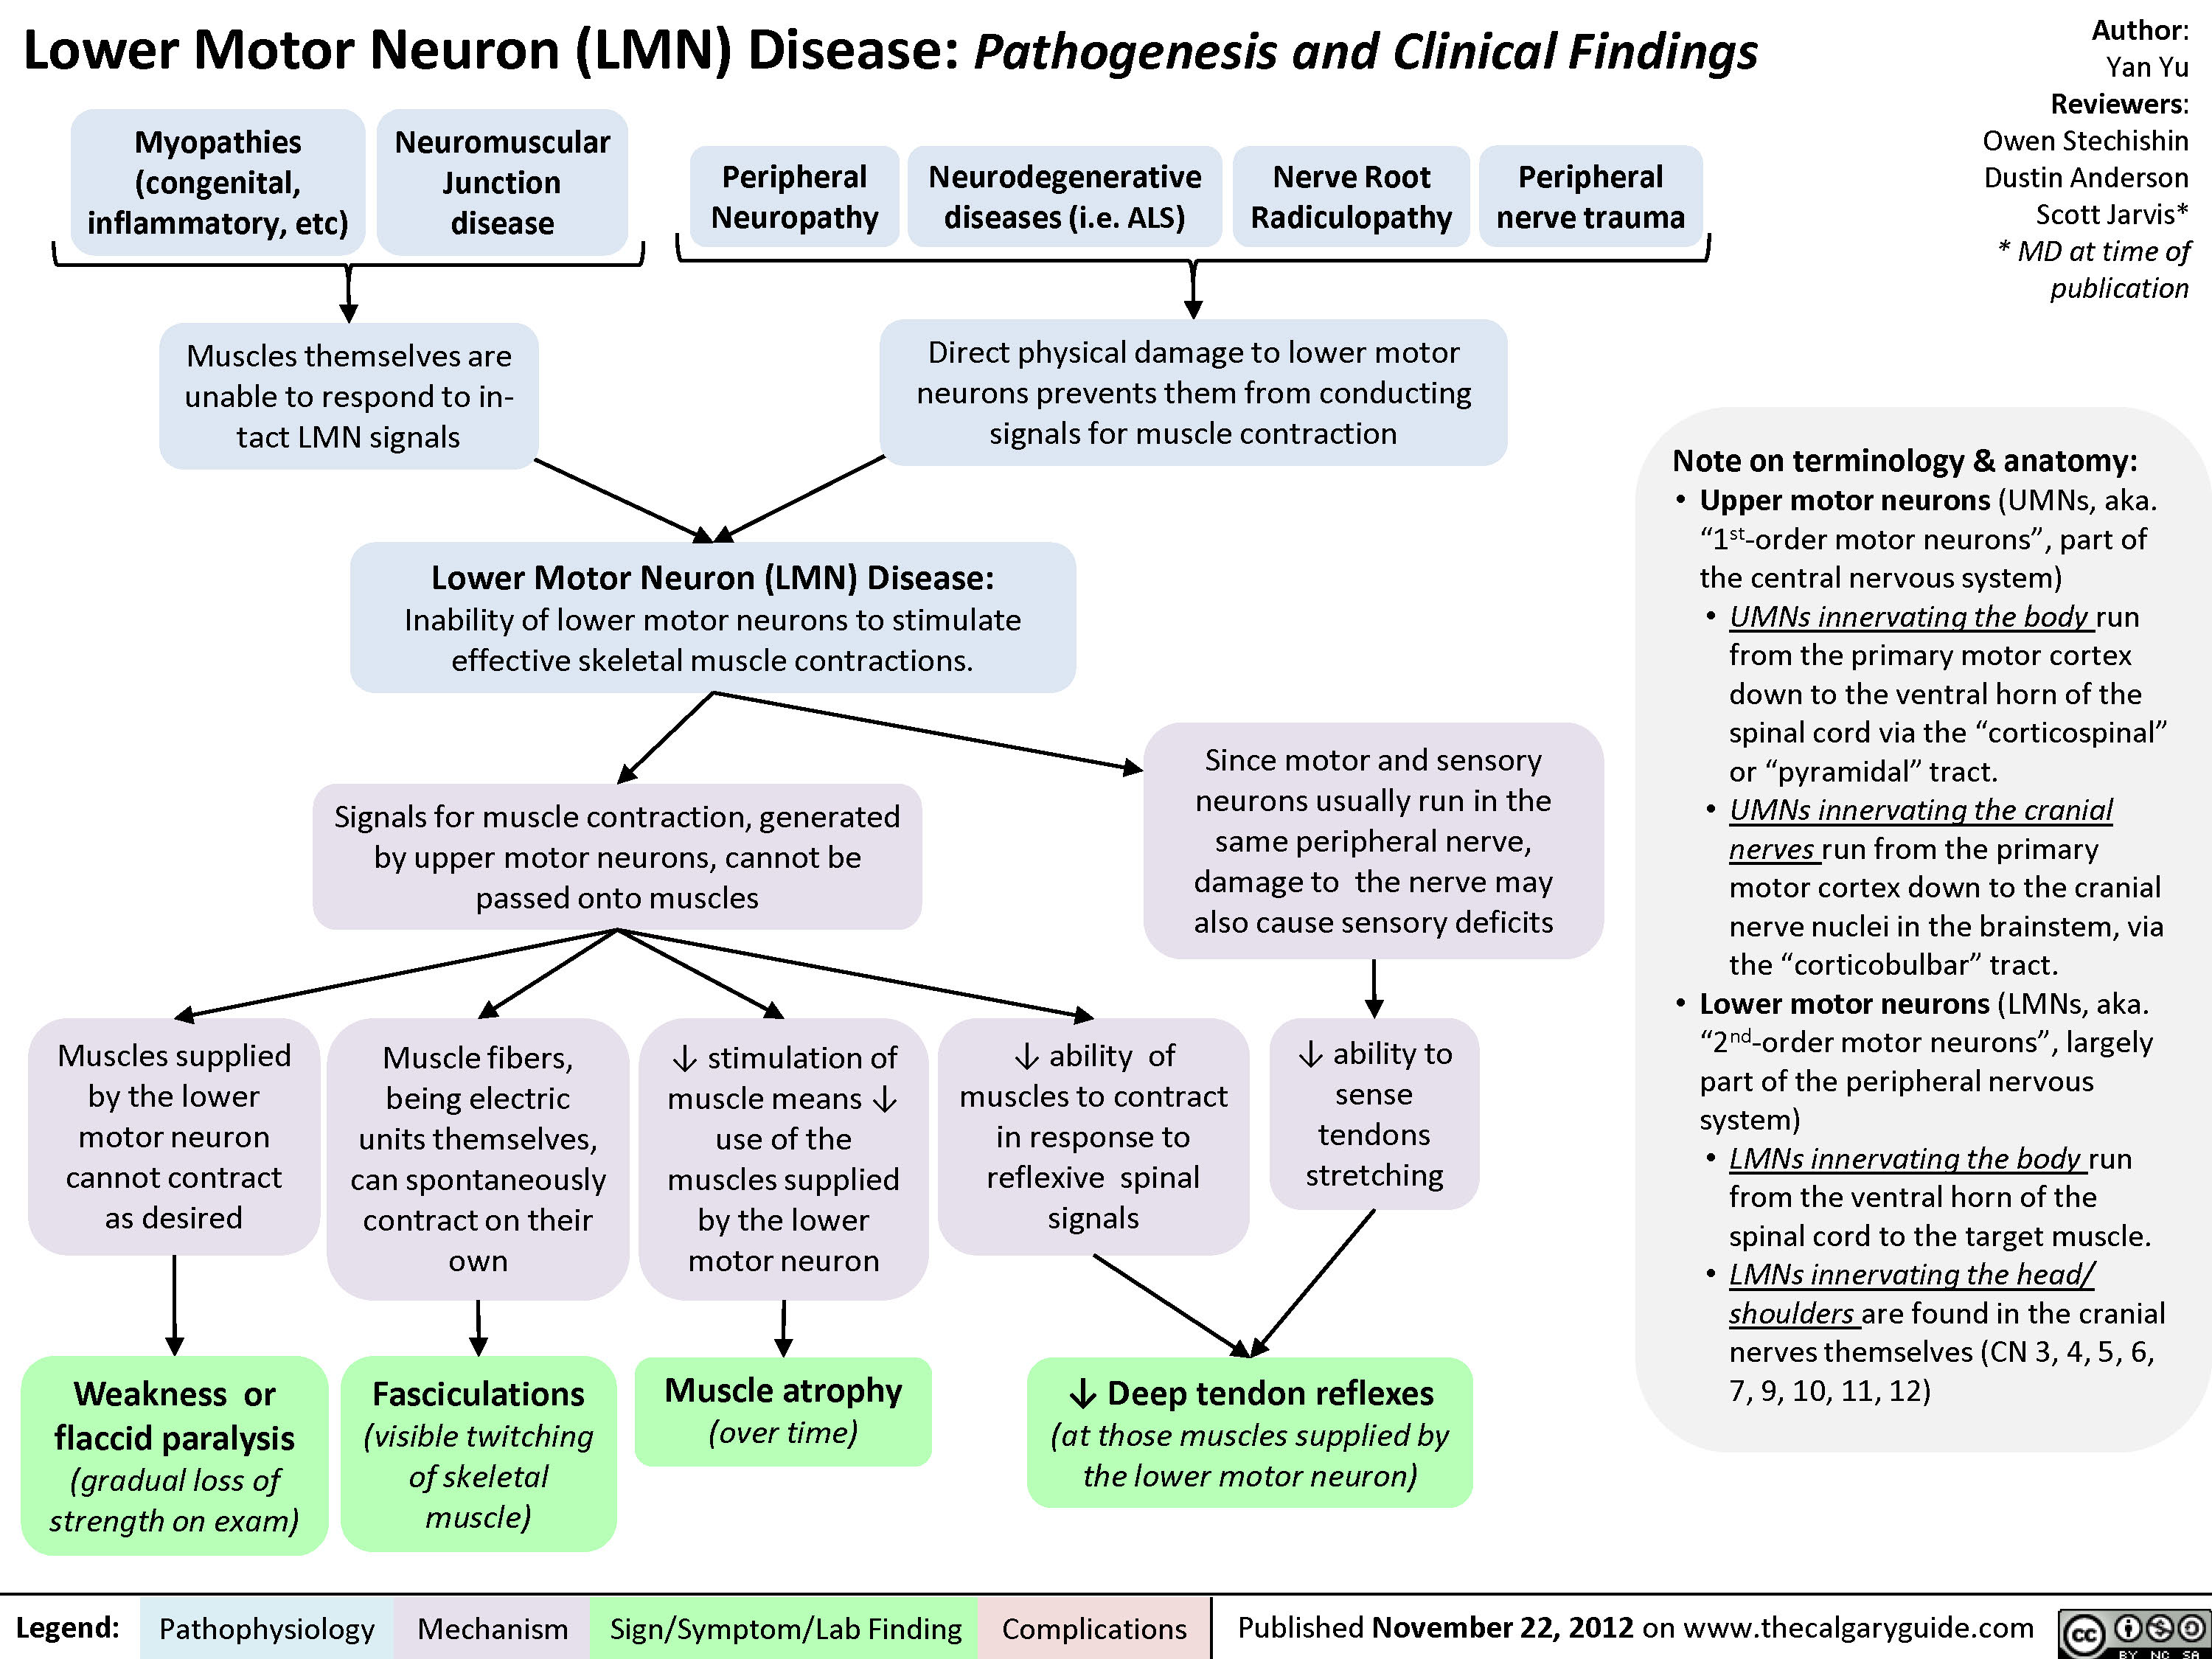 Lower Motor Neuron (UMN) Disease